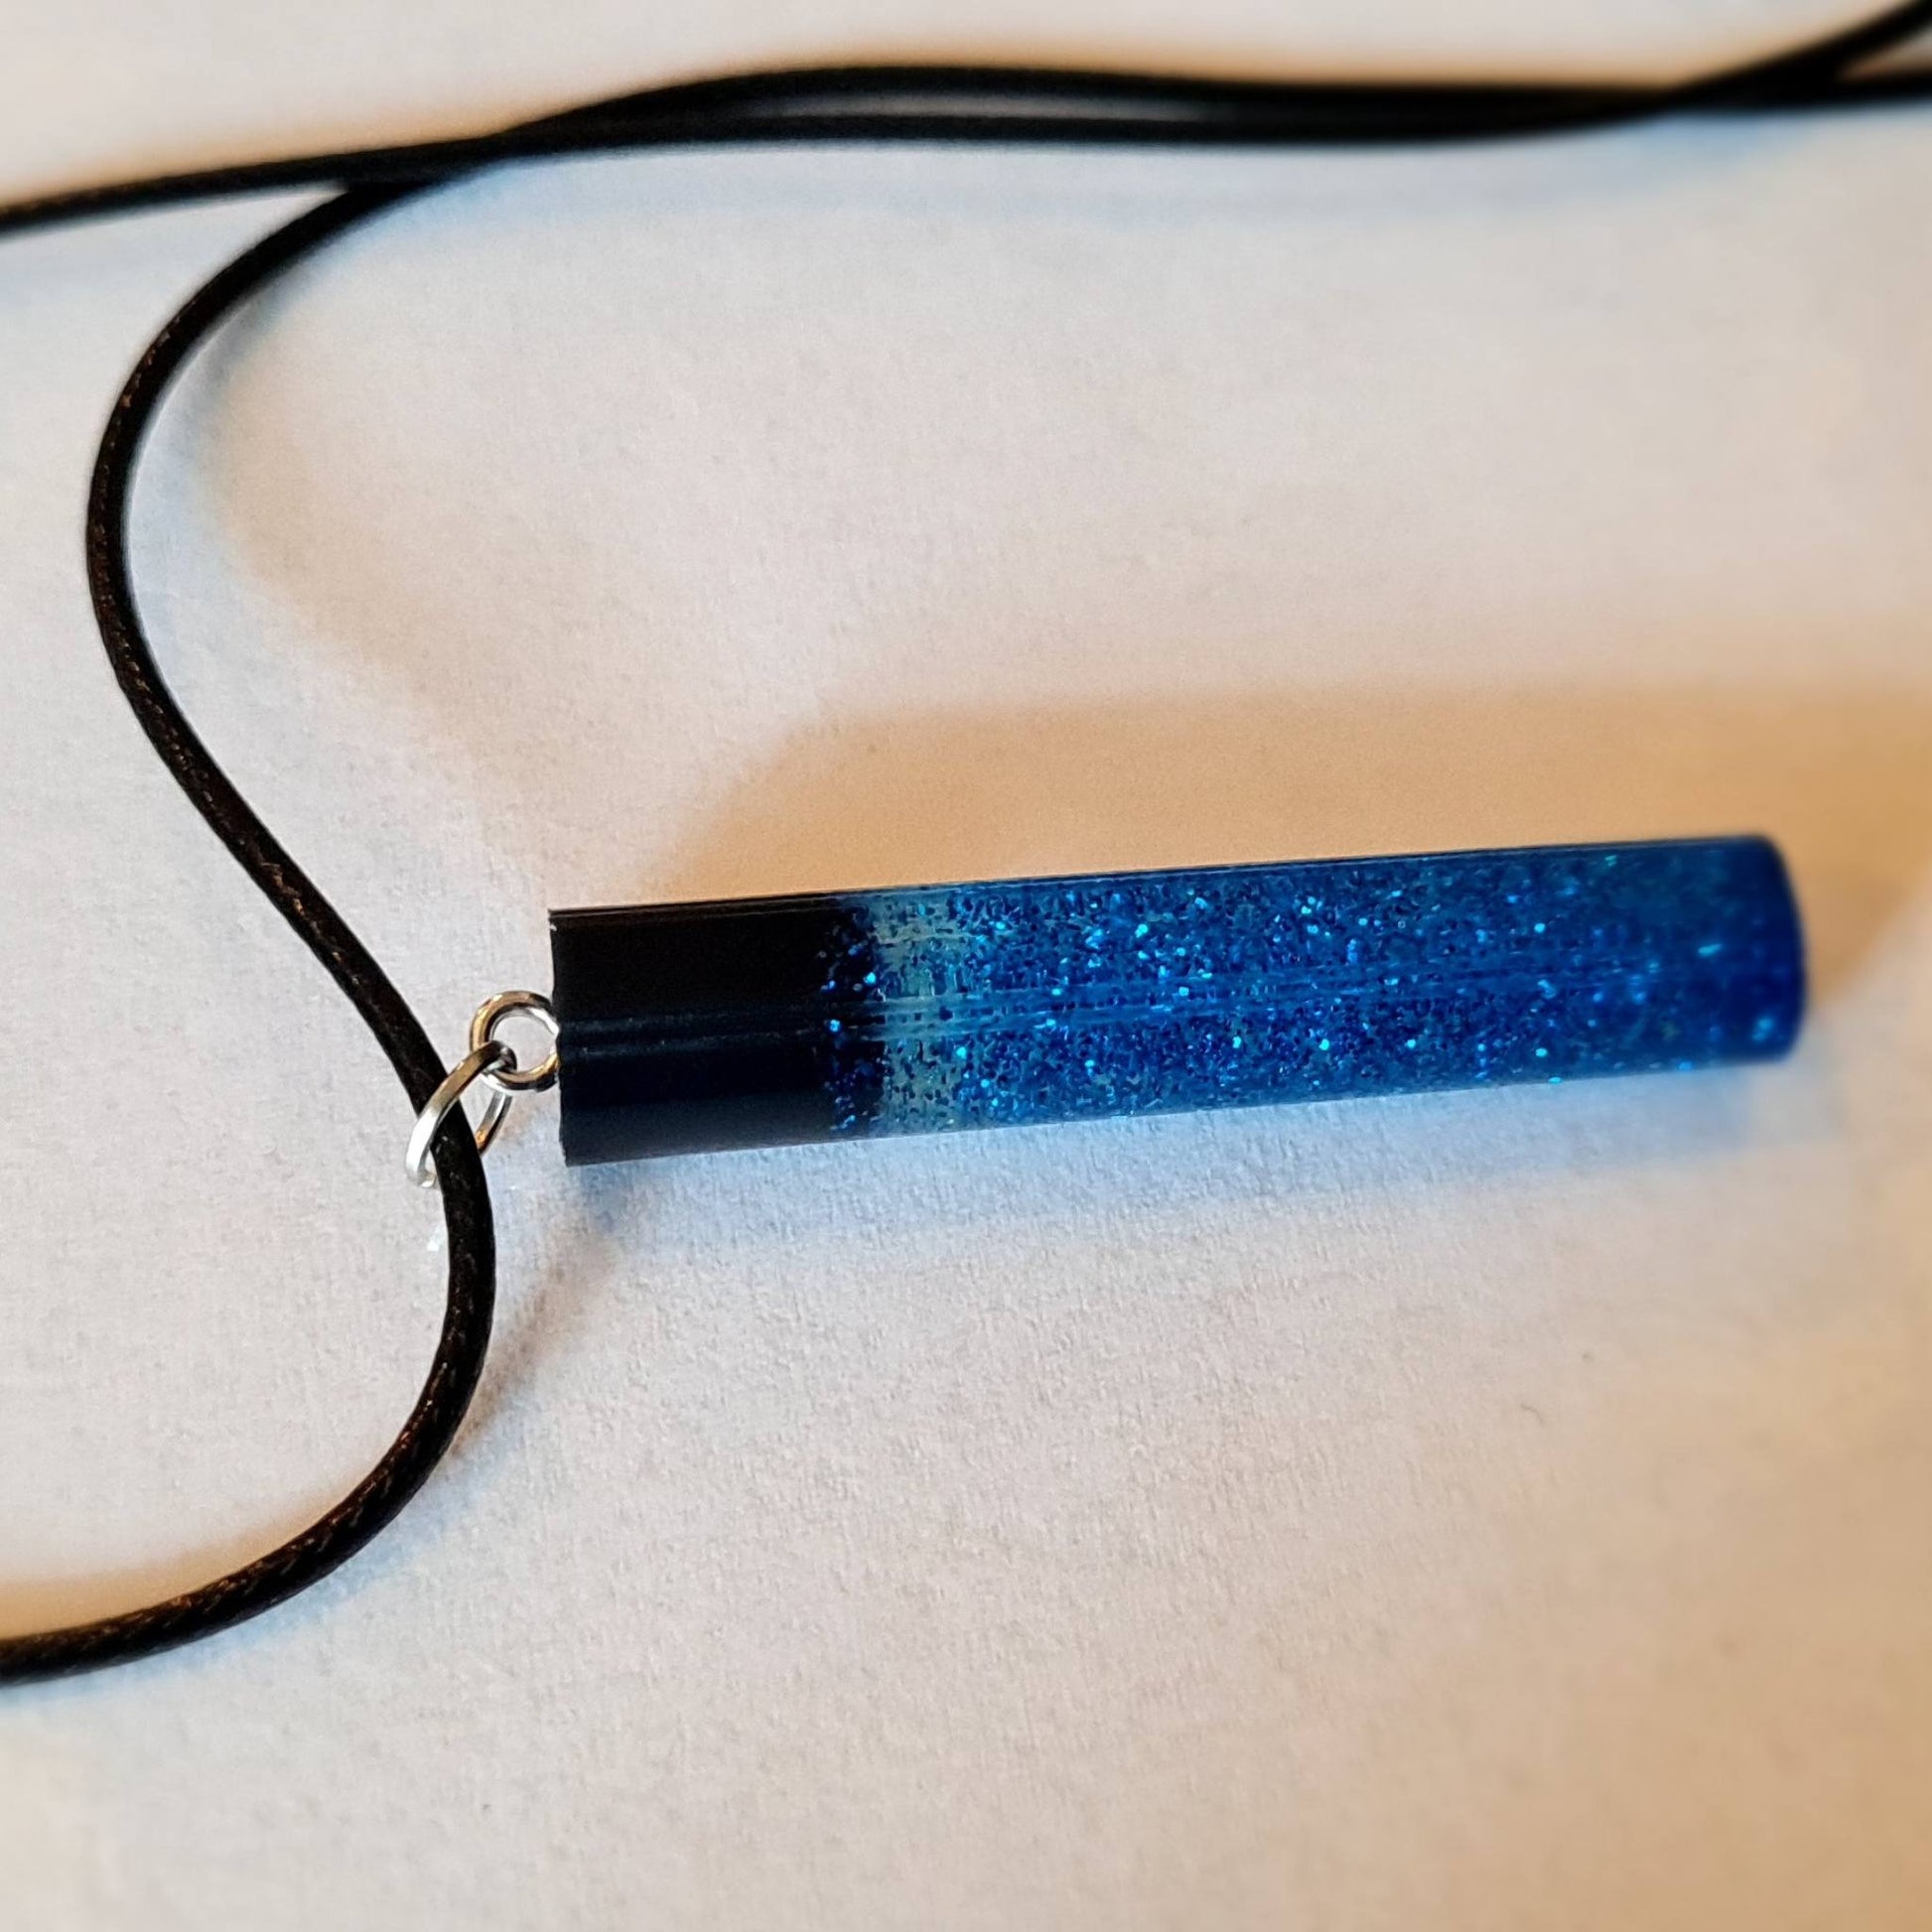 Pandantiv albastru cu sclipici cu snur negru, realizat handmade, fiind un cadou unic pentru ea.